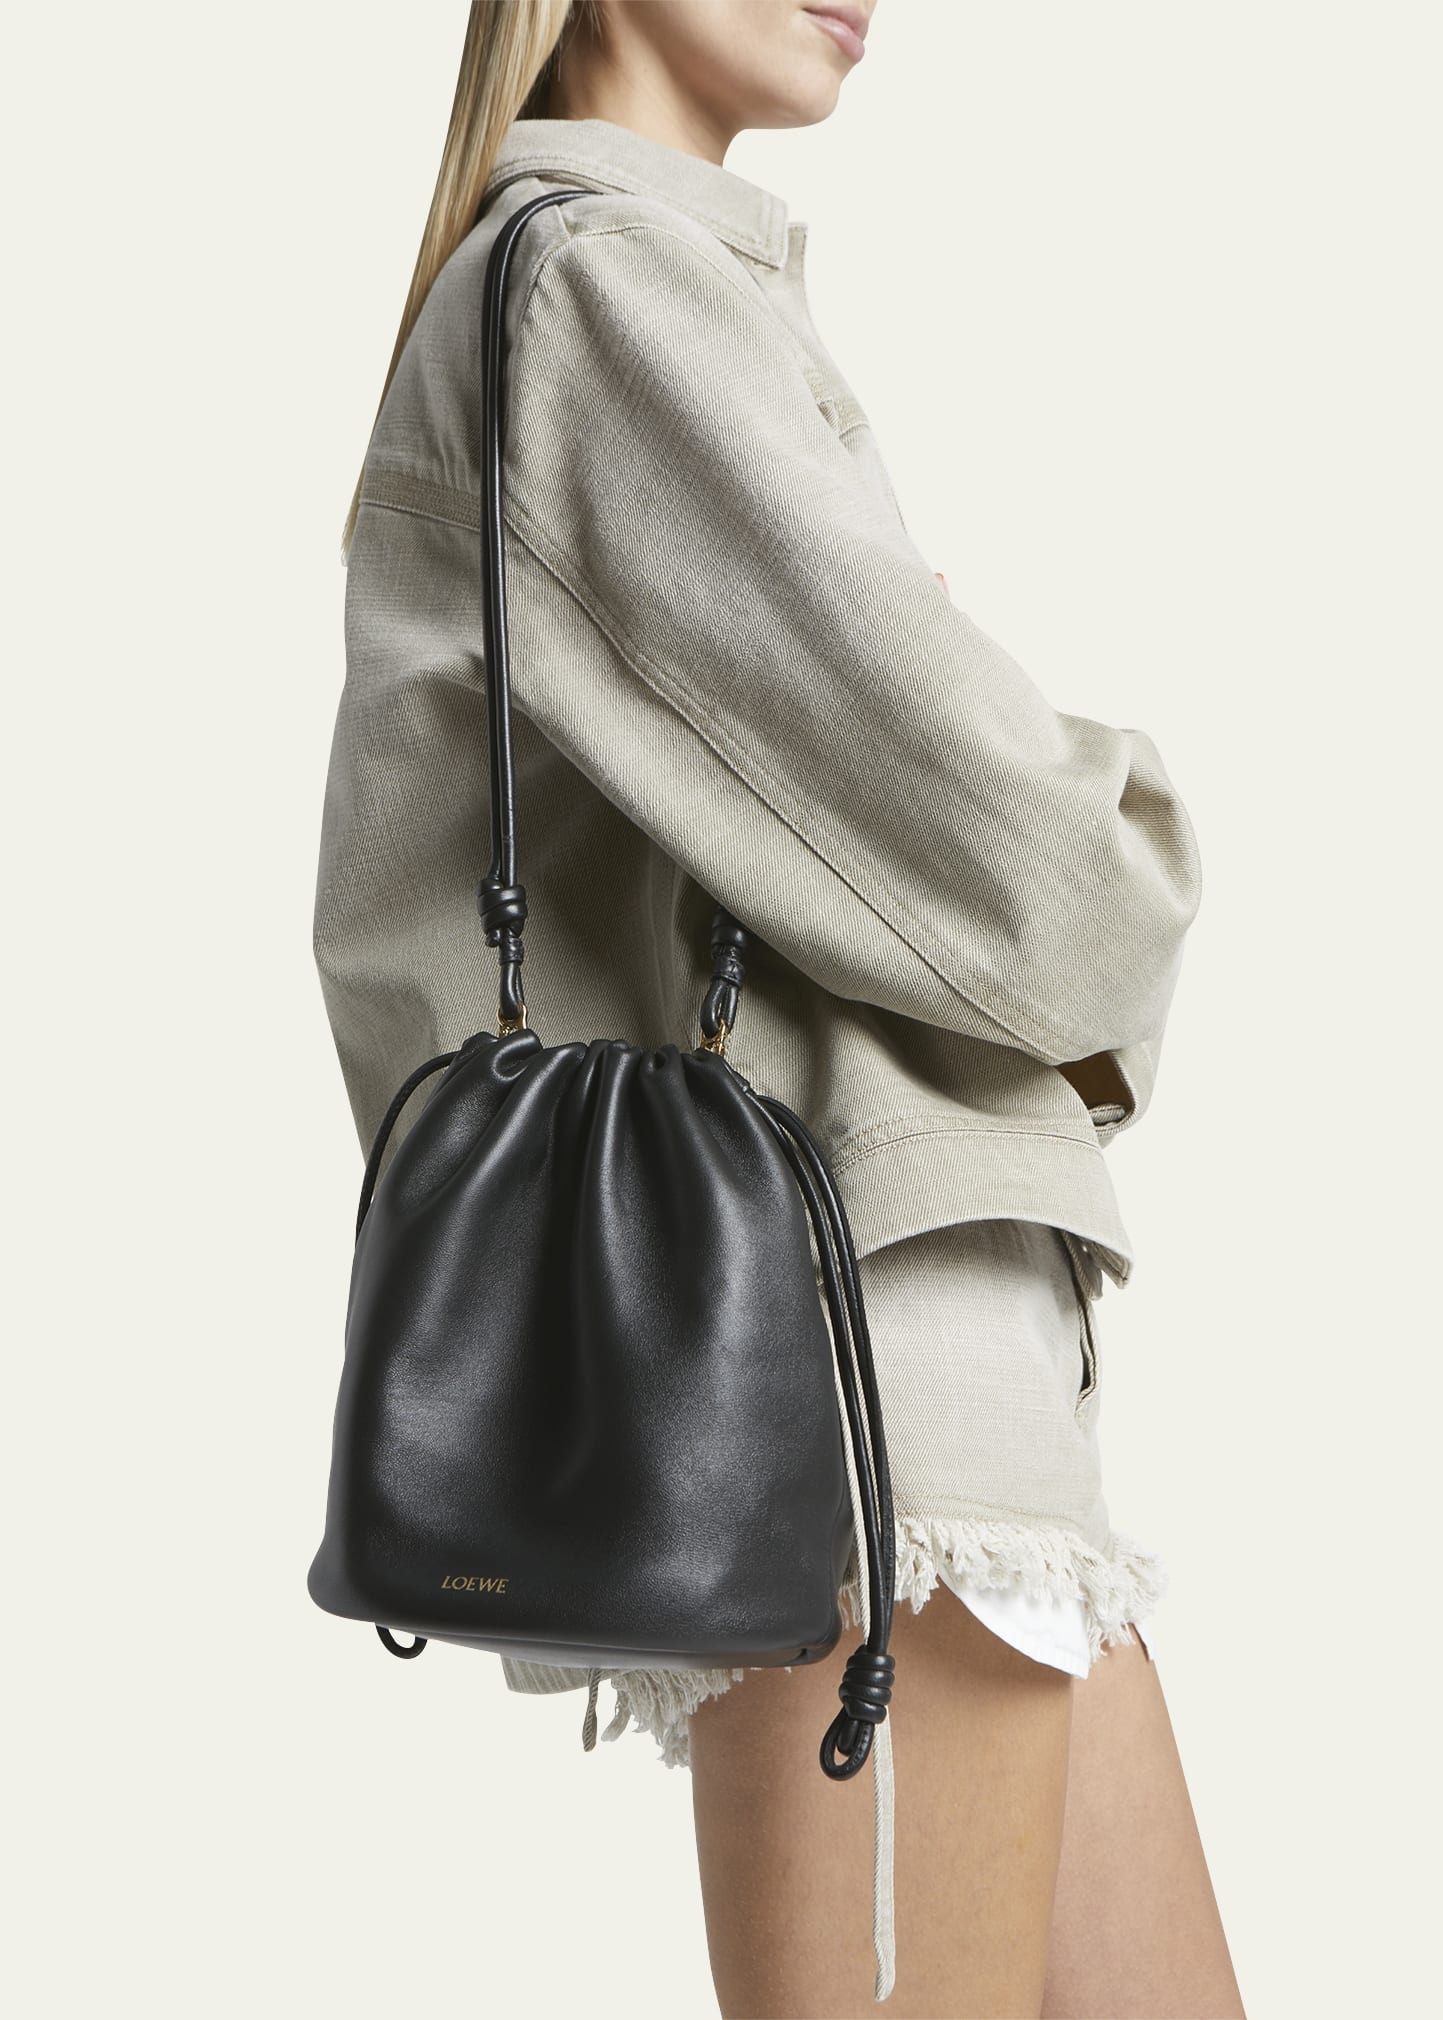 x Paula’s Ibiza Flamenco Bucket Bag in Napa Leather with Chain - 2